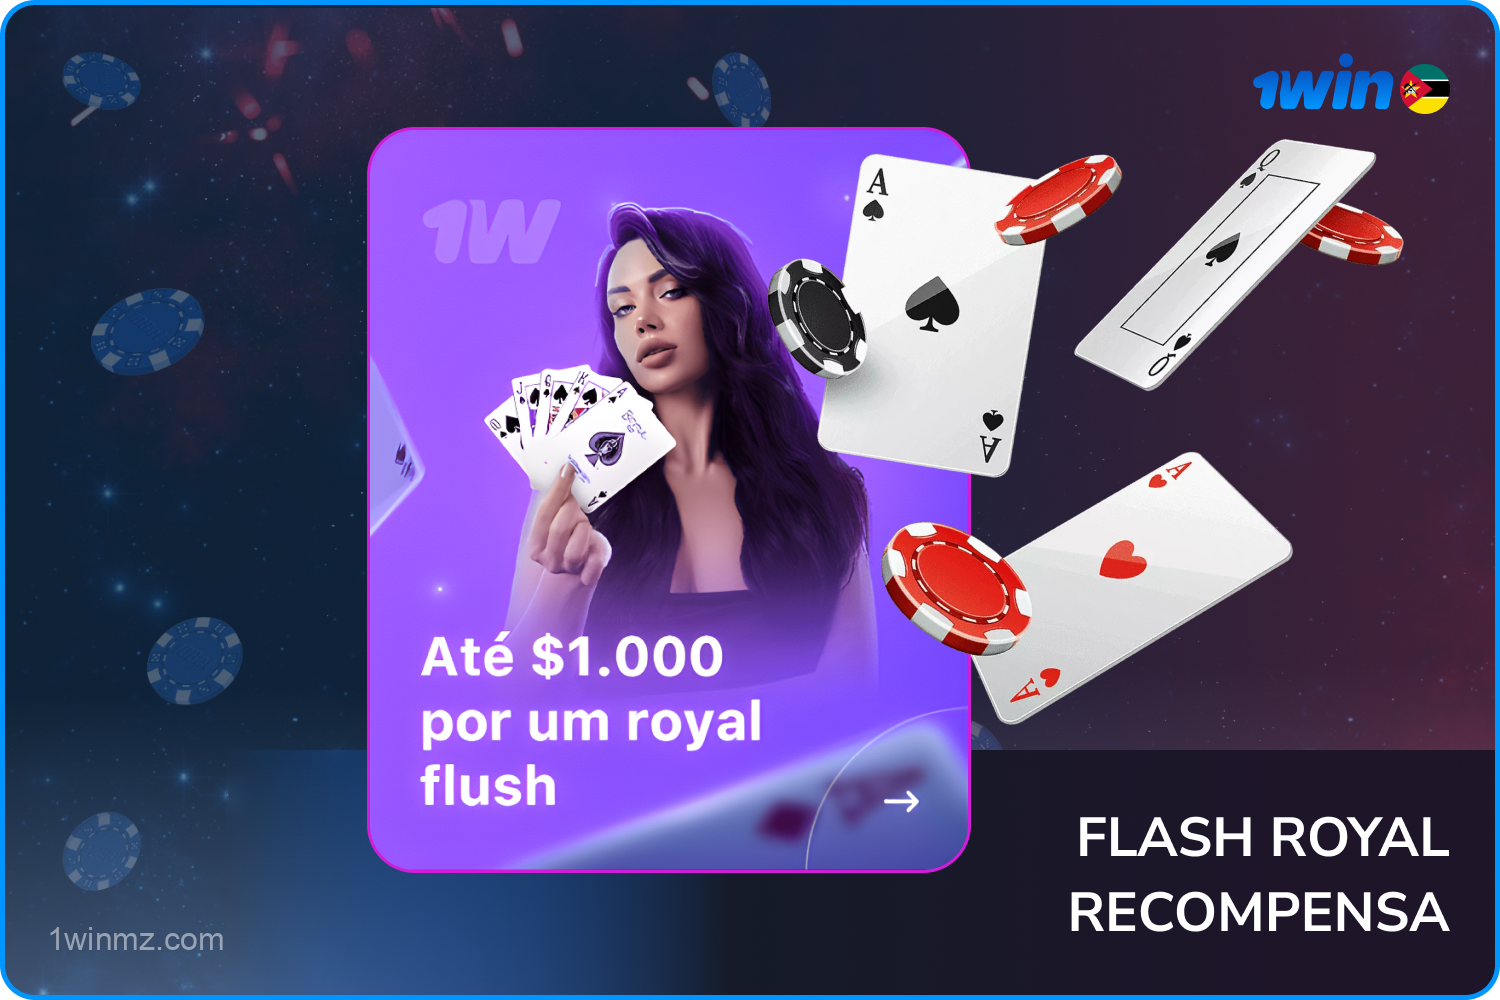 Os jogadores de pôquer do 1win Moçambique podem ganhar grandes bônus ao obter um royal flush